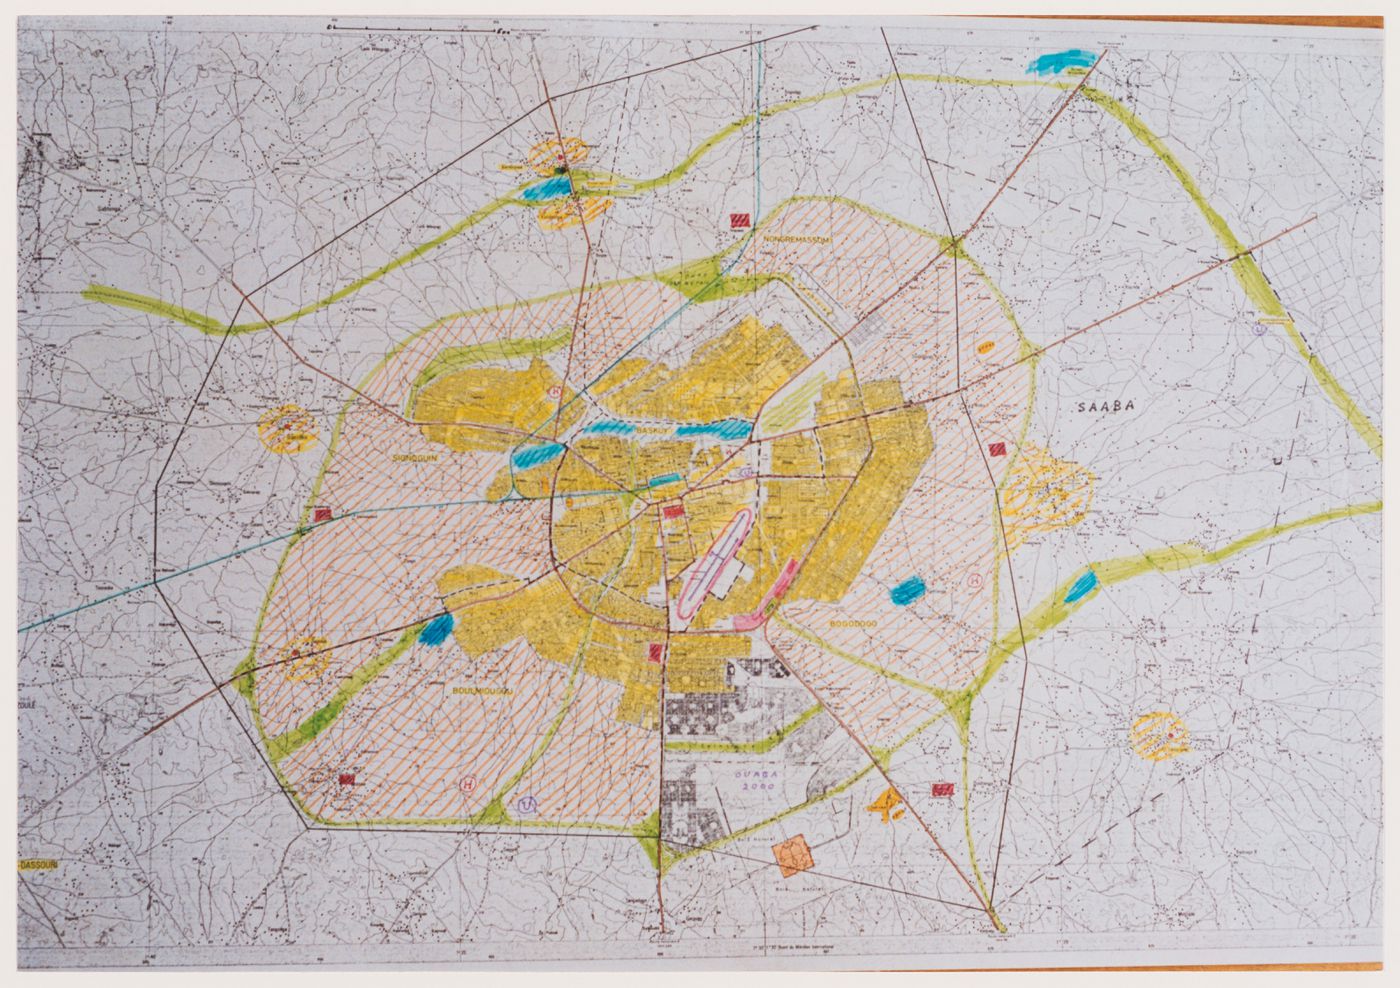 Photograph of an annotated map of Ouagadougou, Burkina Faso